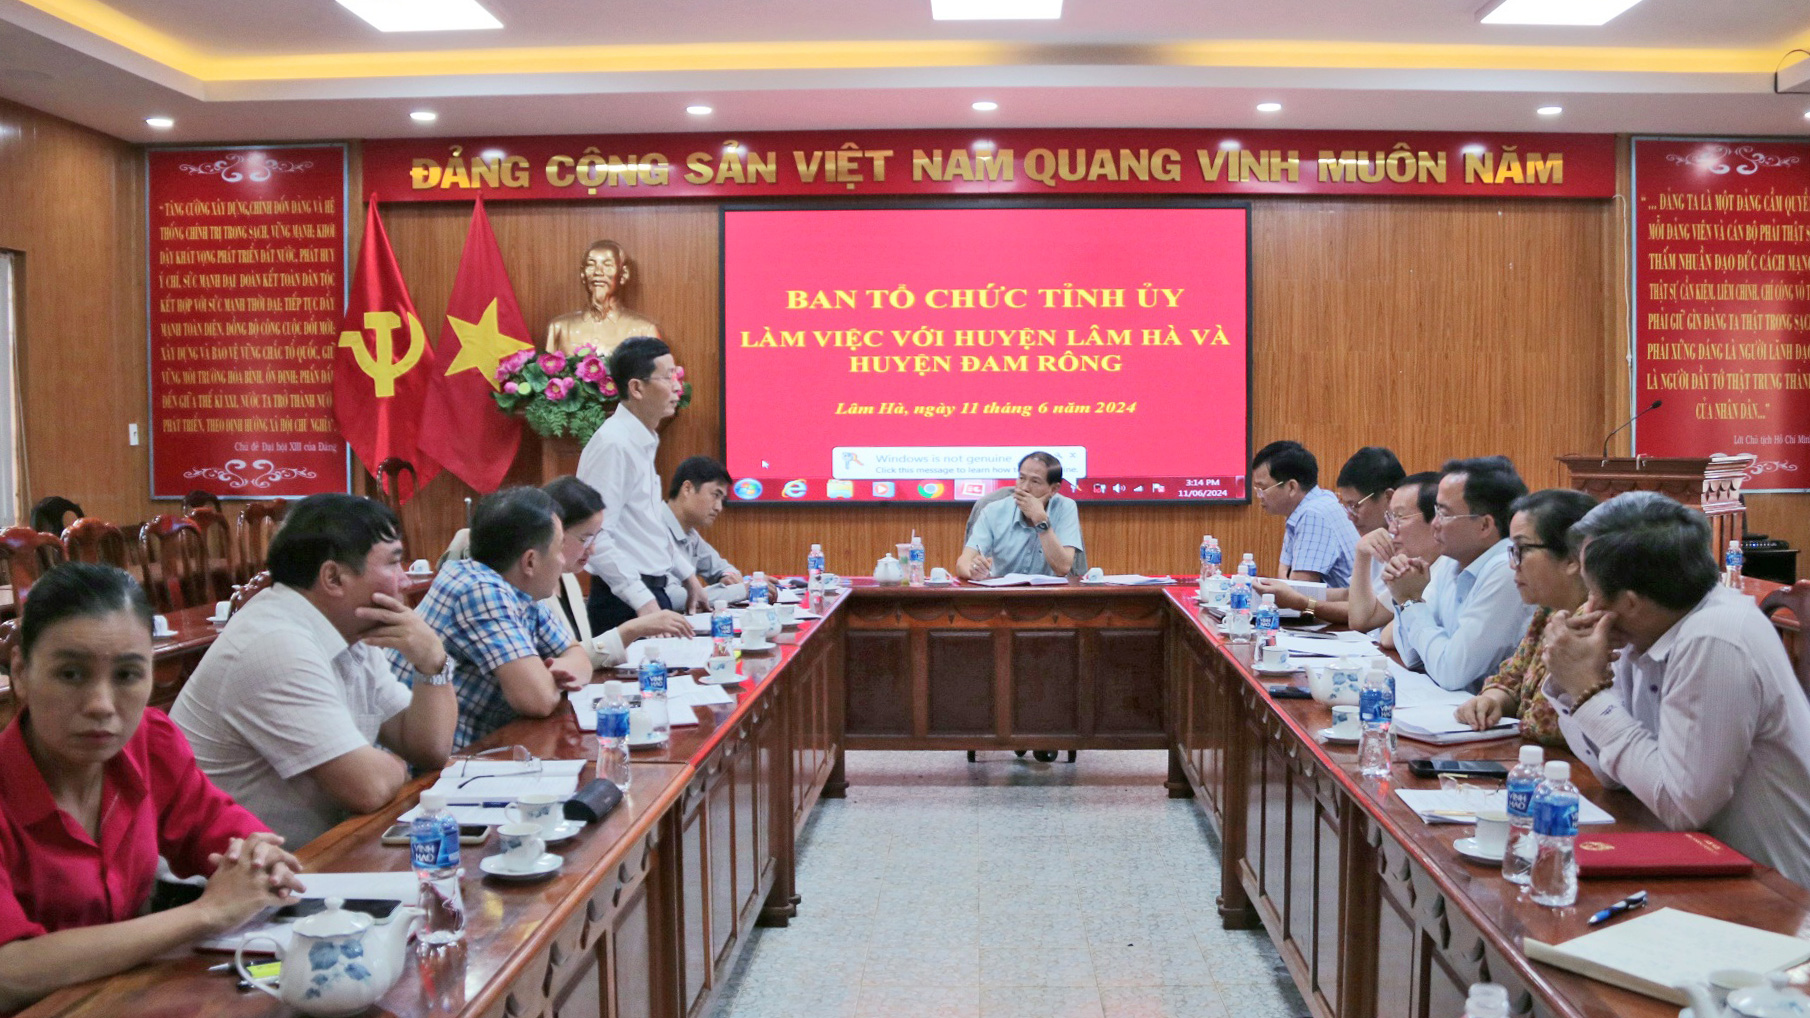 Trưởng ban Tổ chức Tỉnh ủy Lâm Đồng làm việc với huyện Lâm Hà và Đam Rông